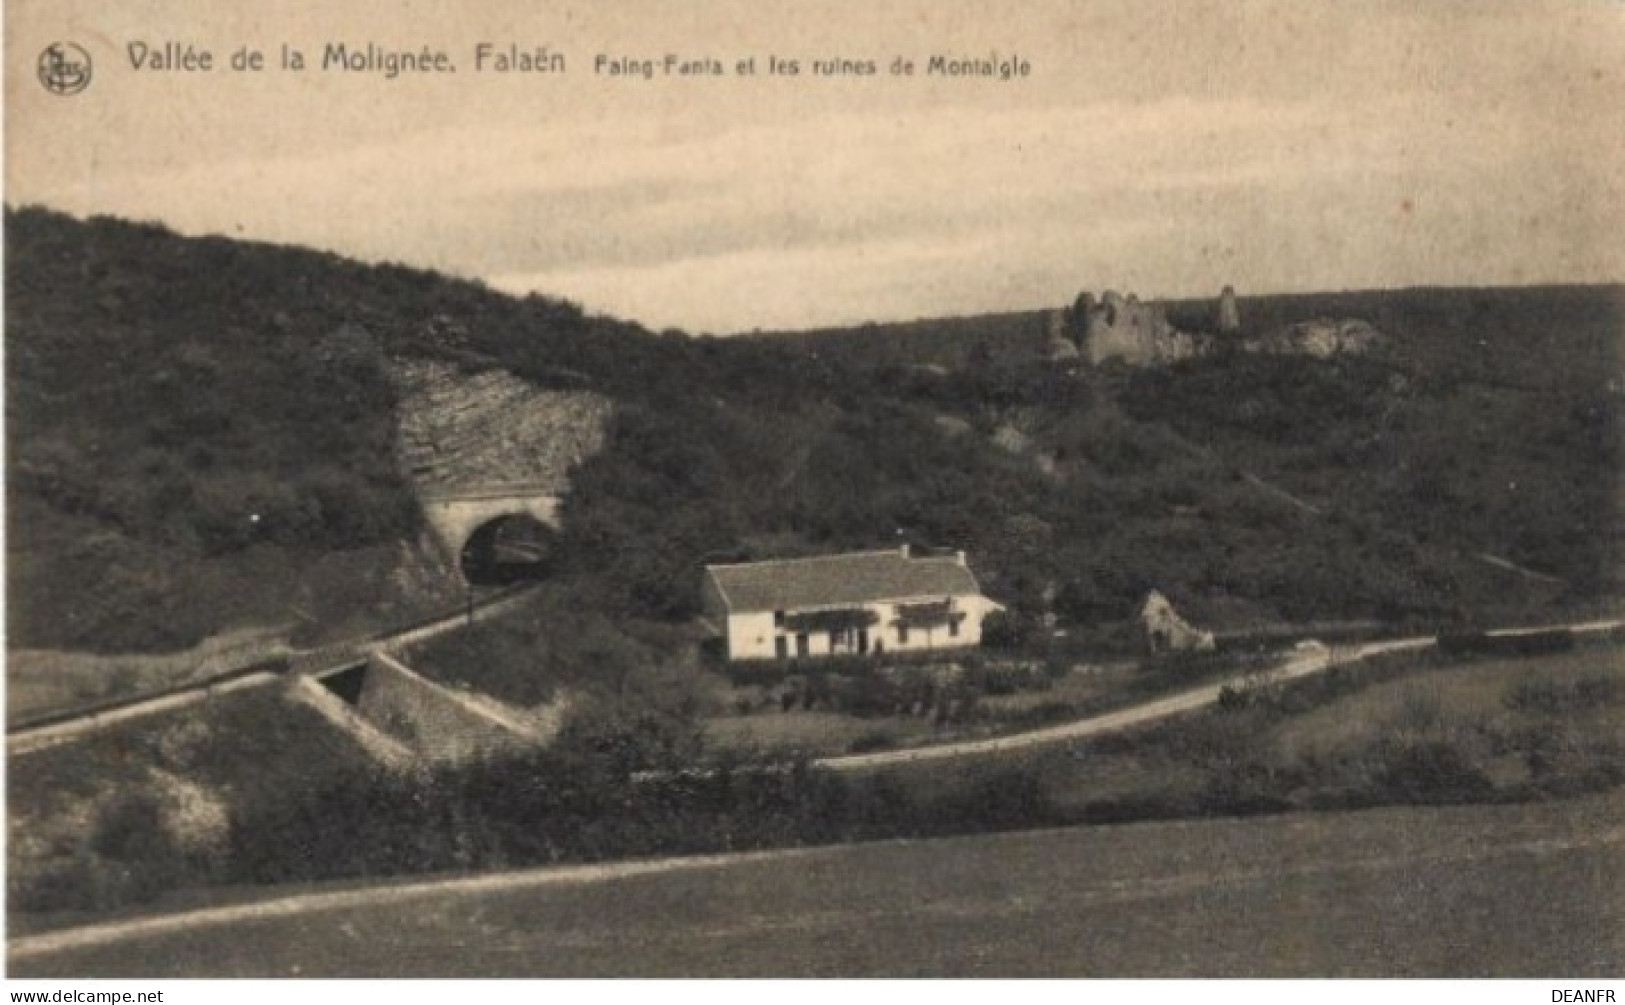 FALAËN : Faing-Fanla Et Les Ruines De Montaigle. Vallée De La Molignée. - Onhaye